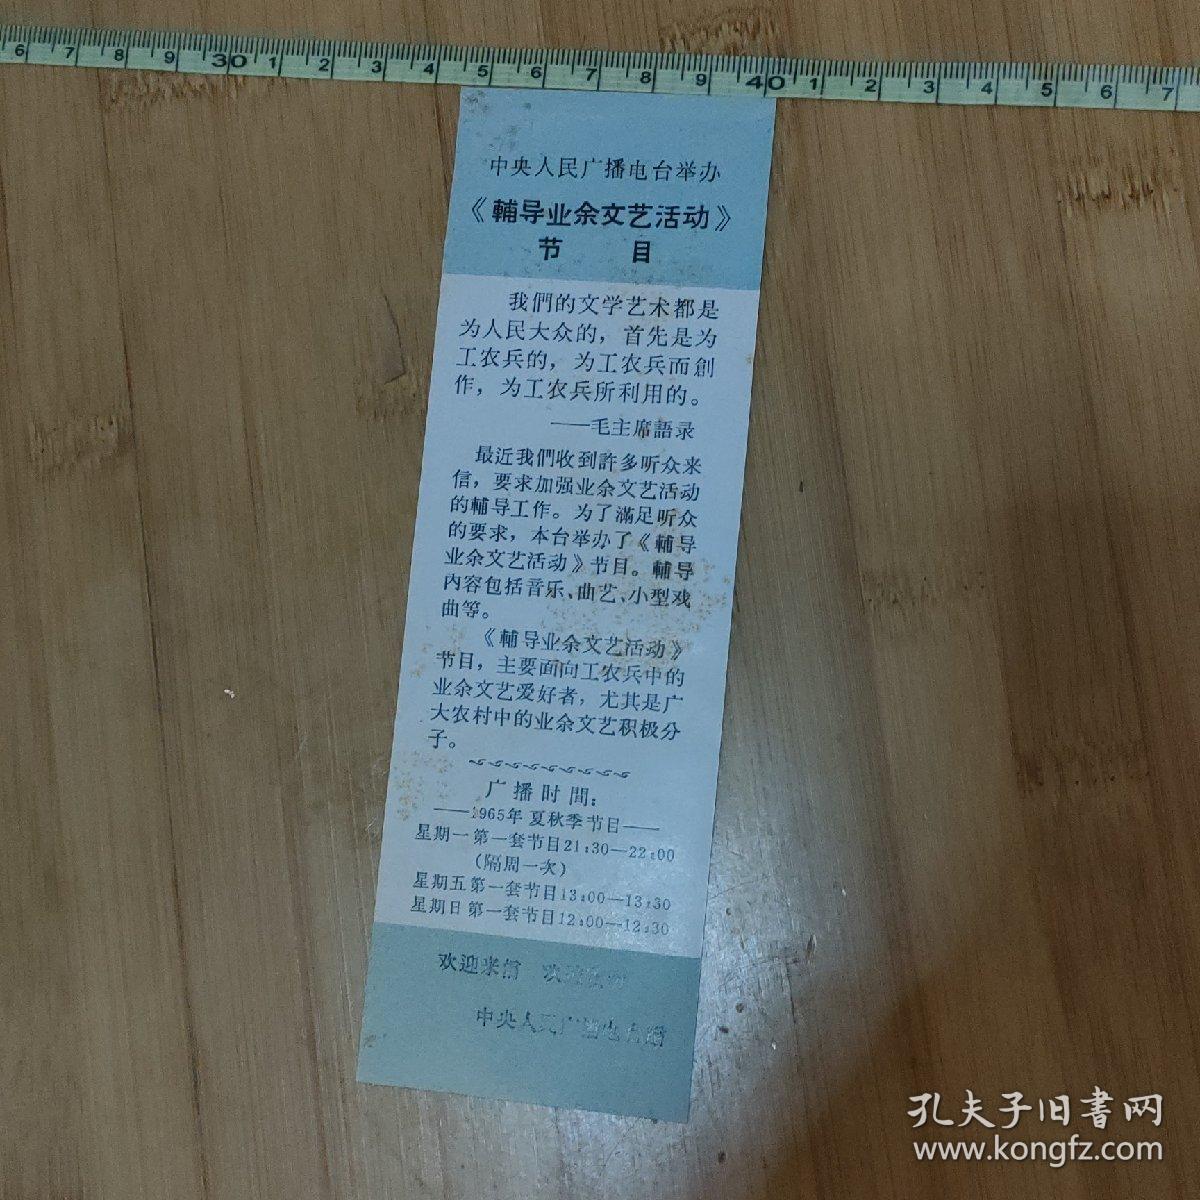 中央人民广播电台举办《辅导业余文艺活动》节目宣传书签
（印有1965年夏秋季节目时间表）
带毛主席语录